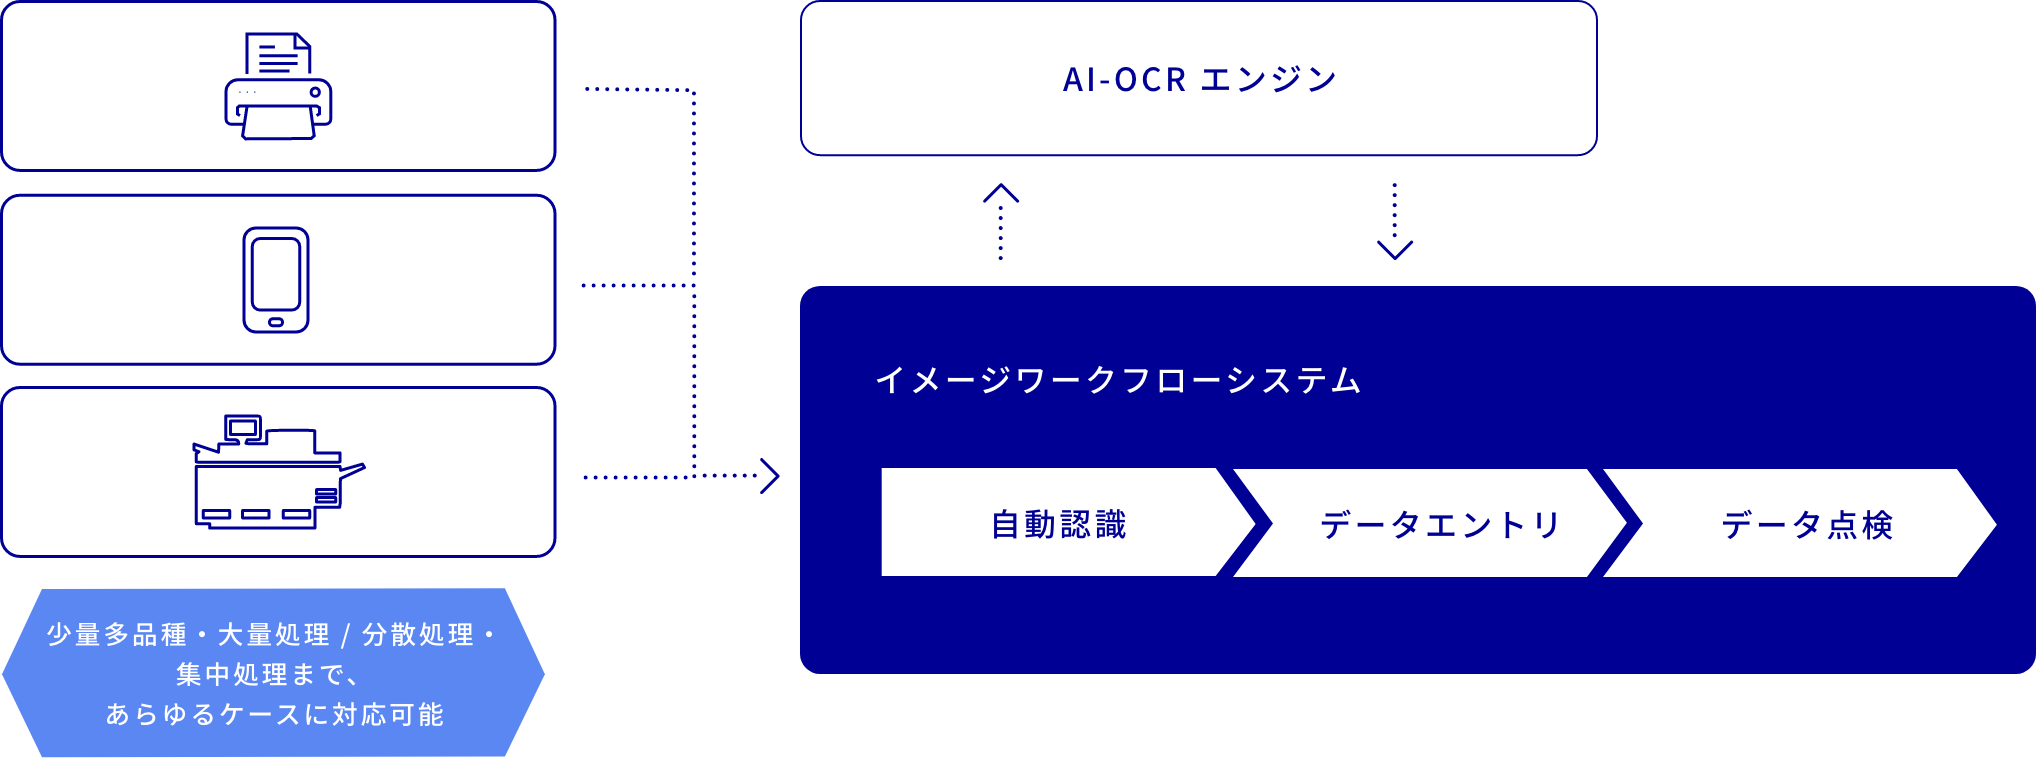 DX(デジタルトランスフォーメーション)におけるAI-OCRの取組み